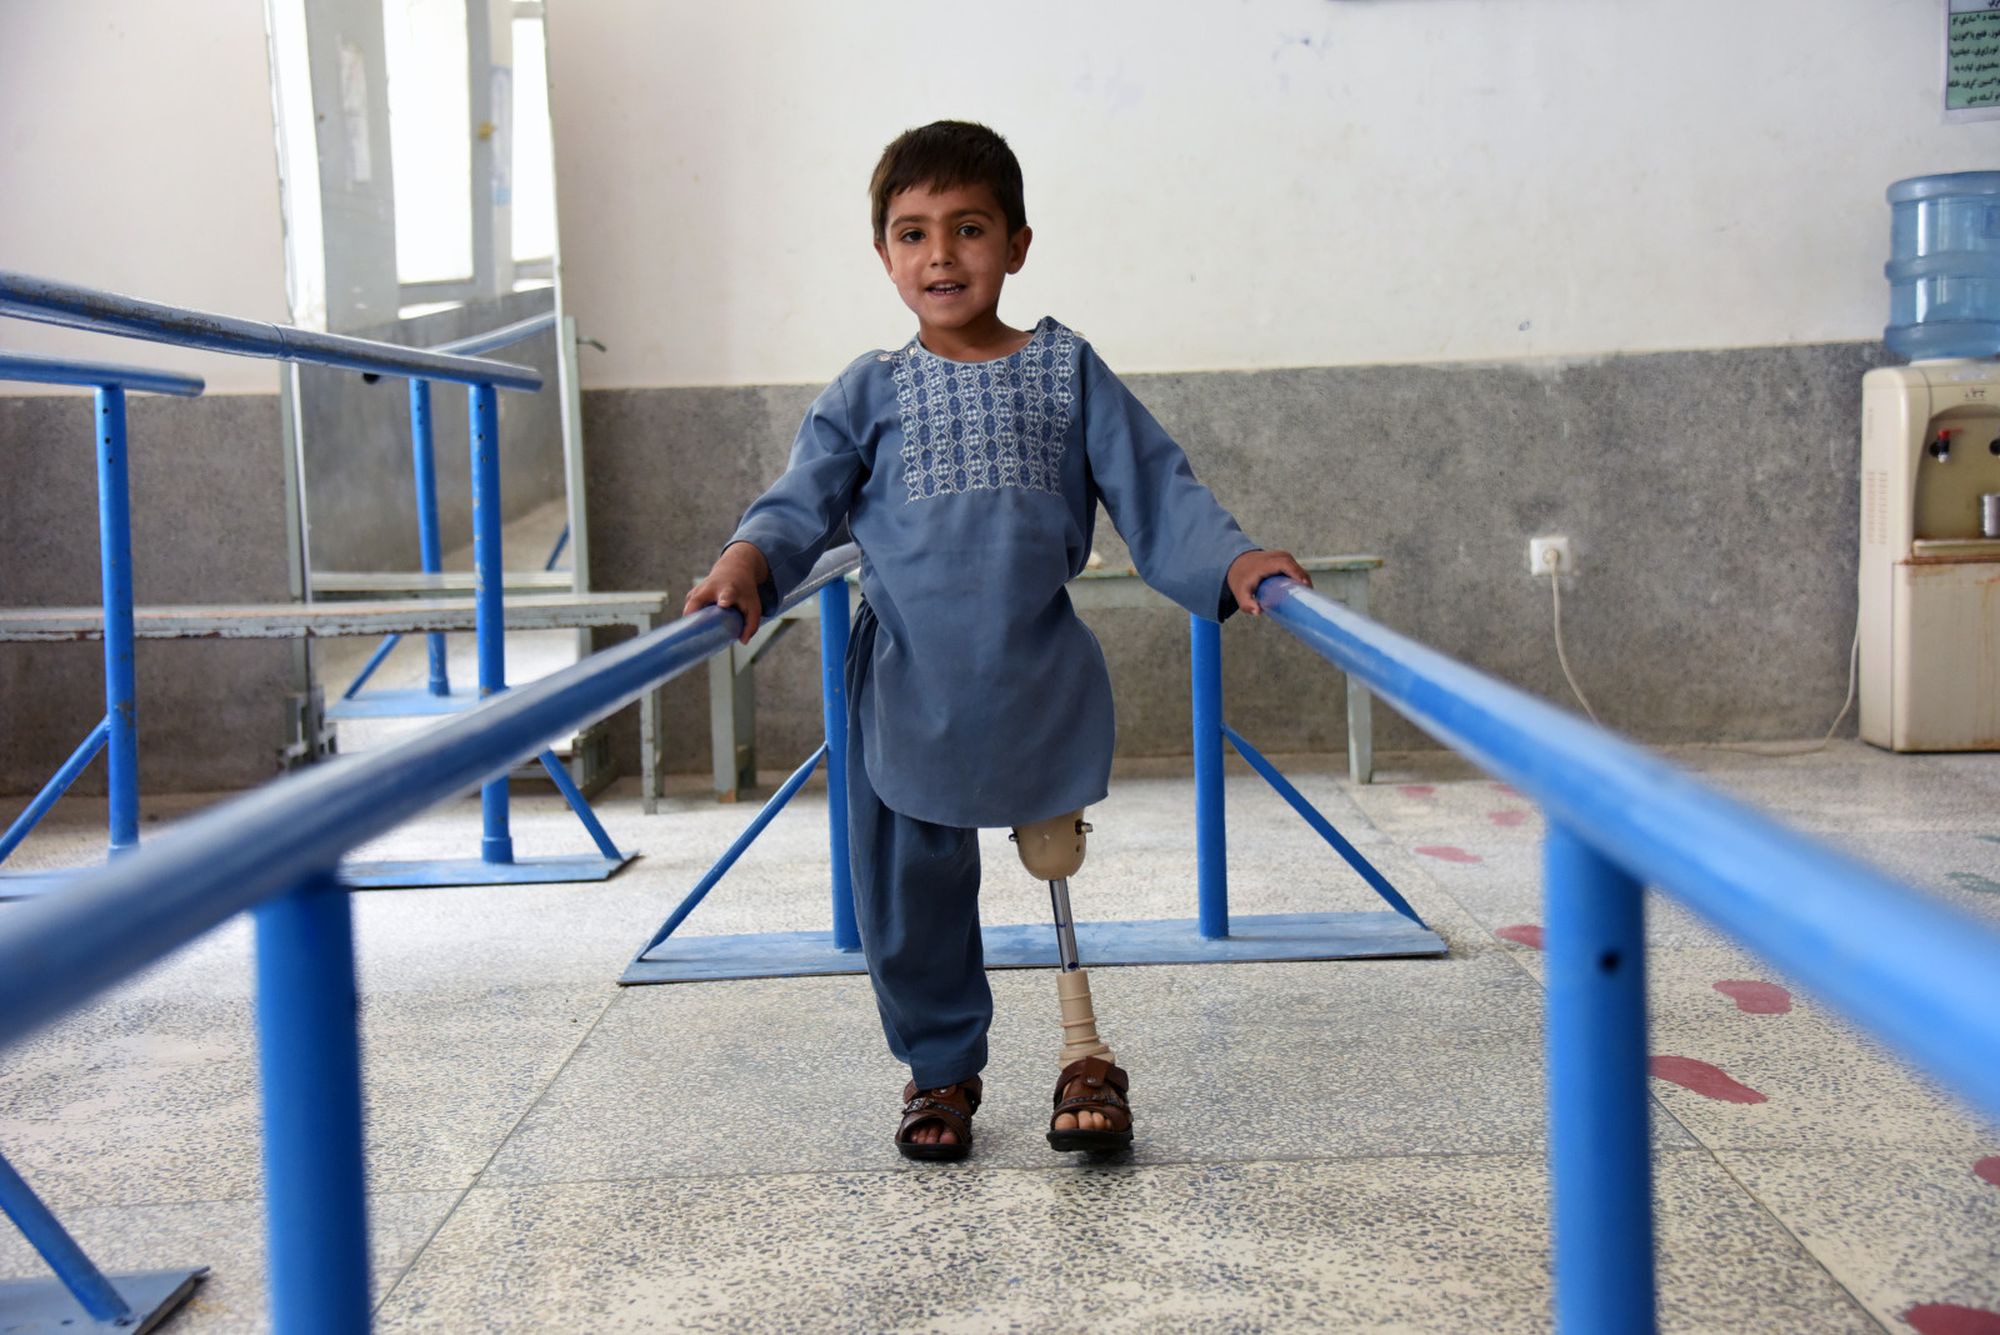 Ein Junge aus Afghanistan übt an Handläufen mit seiner Prothese zu gehen.